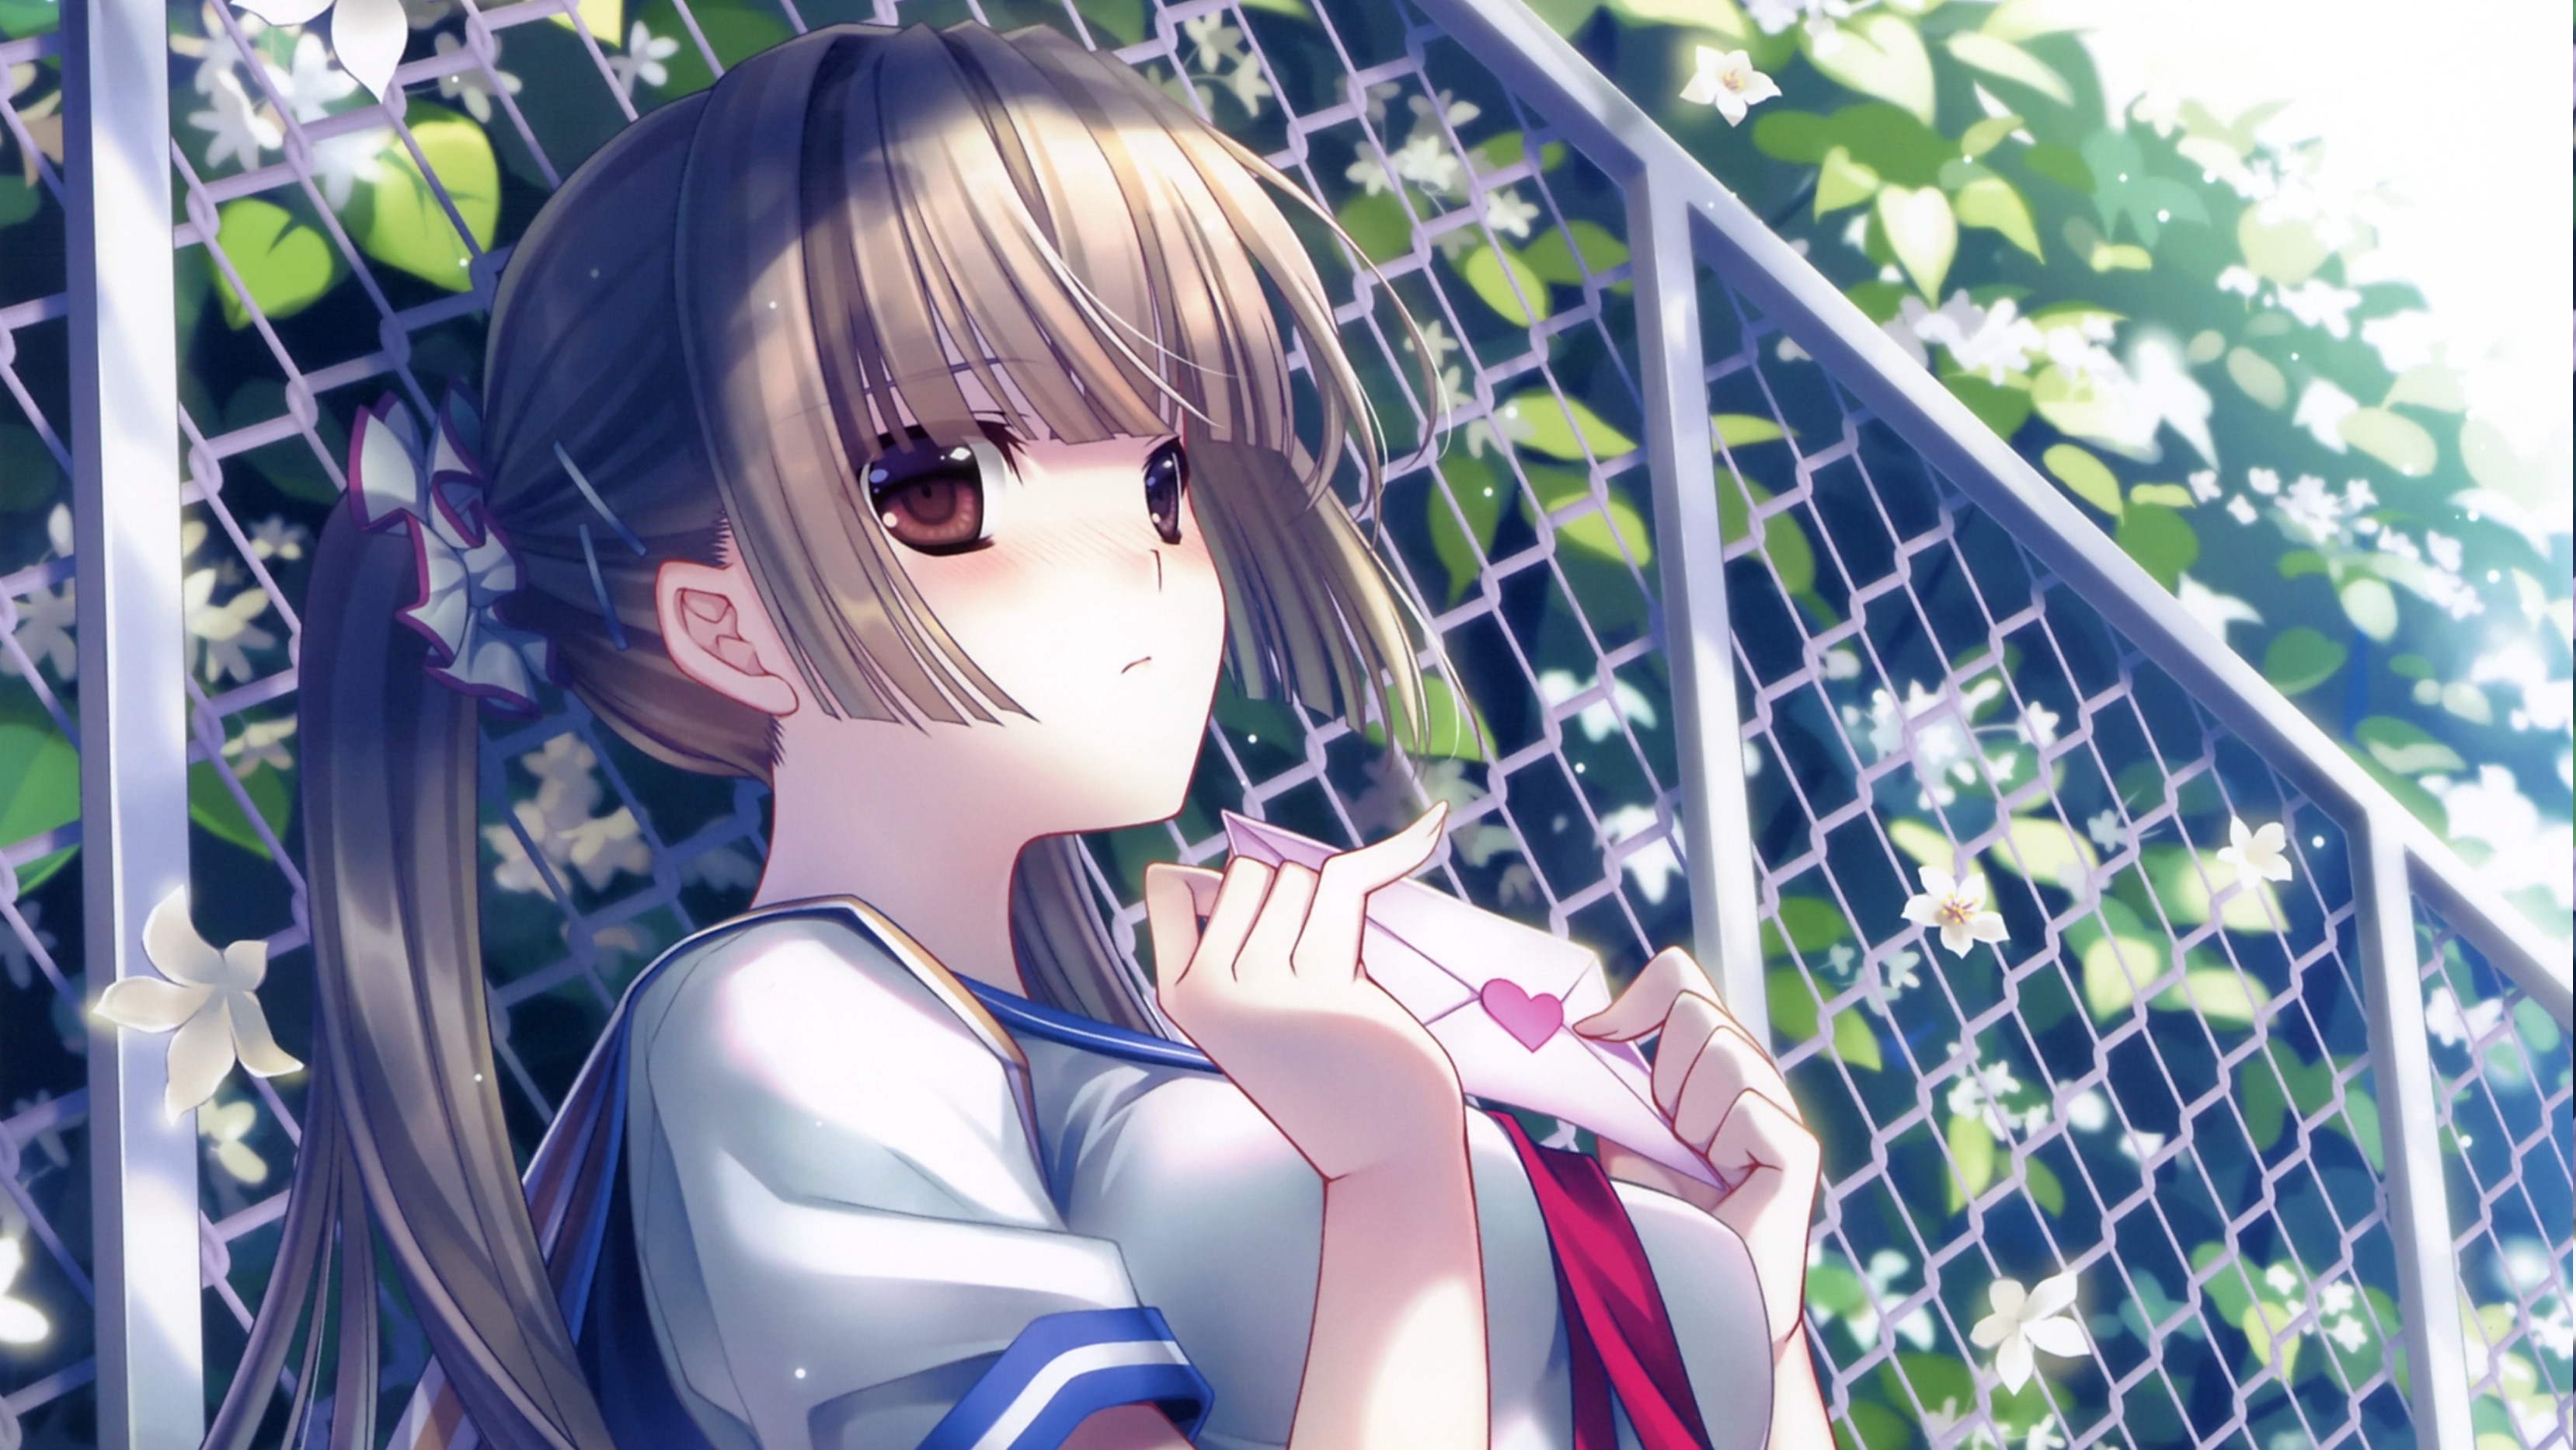 Anime Girl In Hd - 3316x1866 Wallpaper 